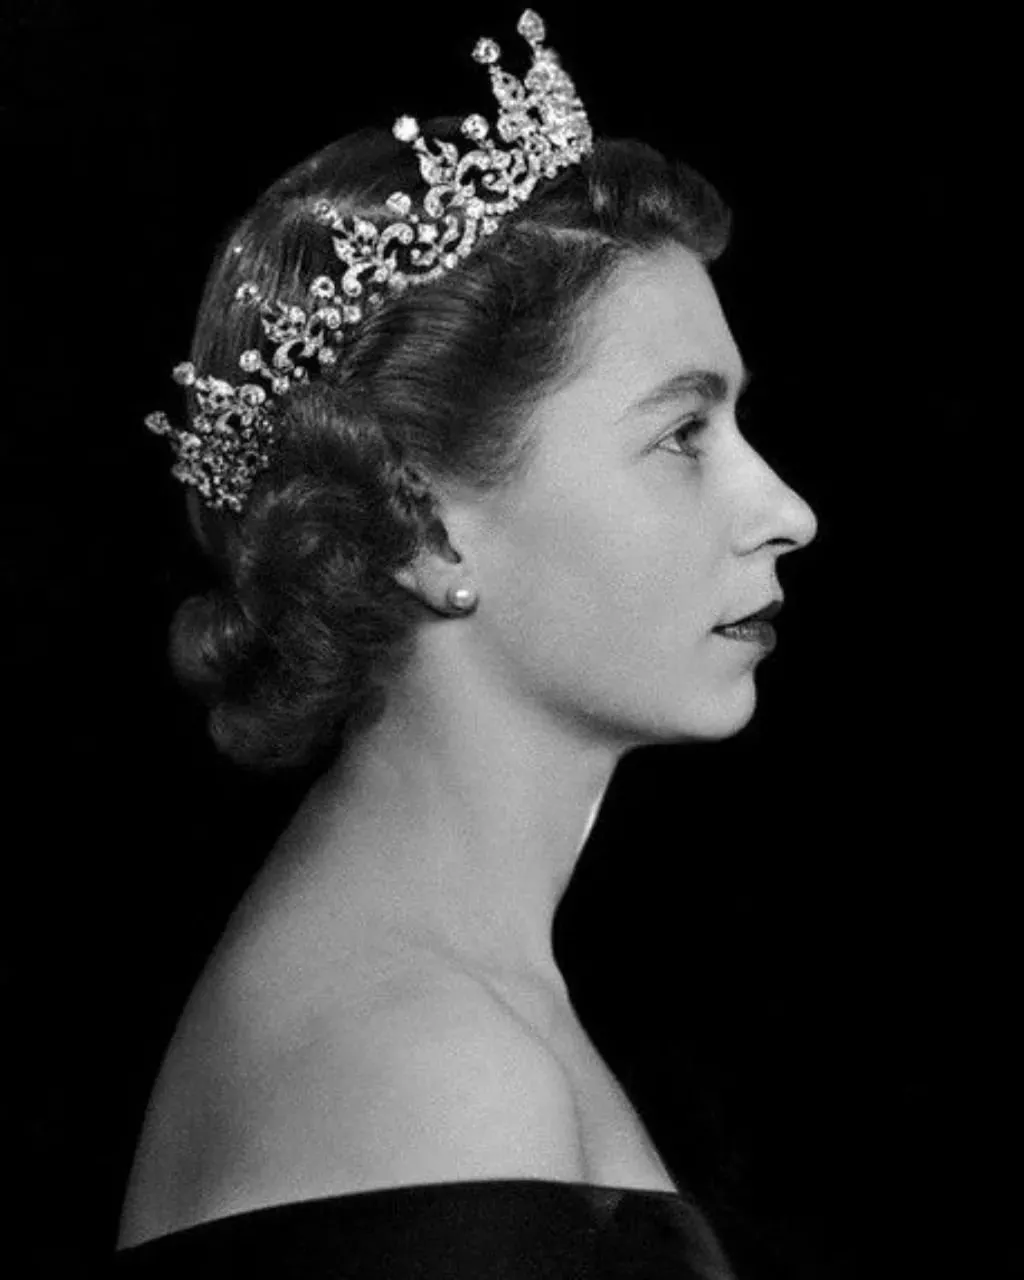 أول صورة رسمية للملكة اليزابيث الثانية بعد توليها العرش